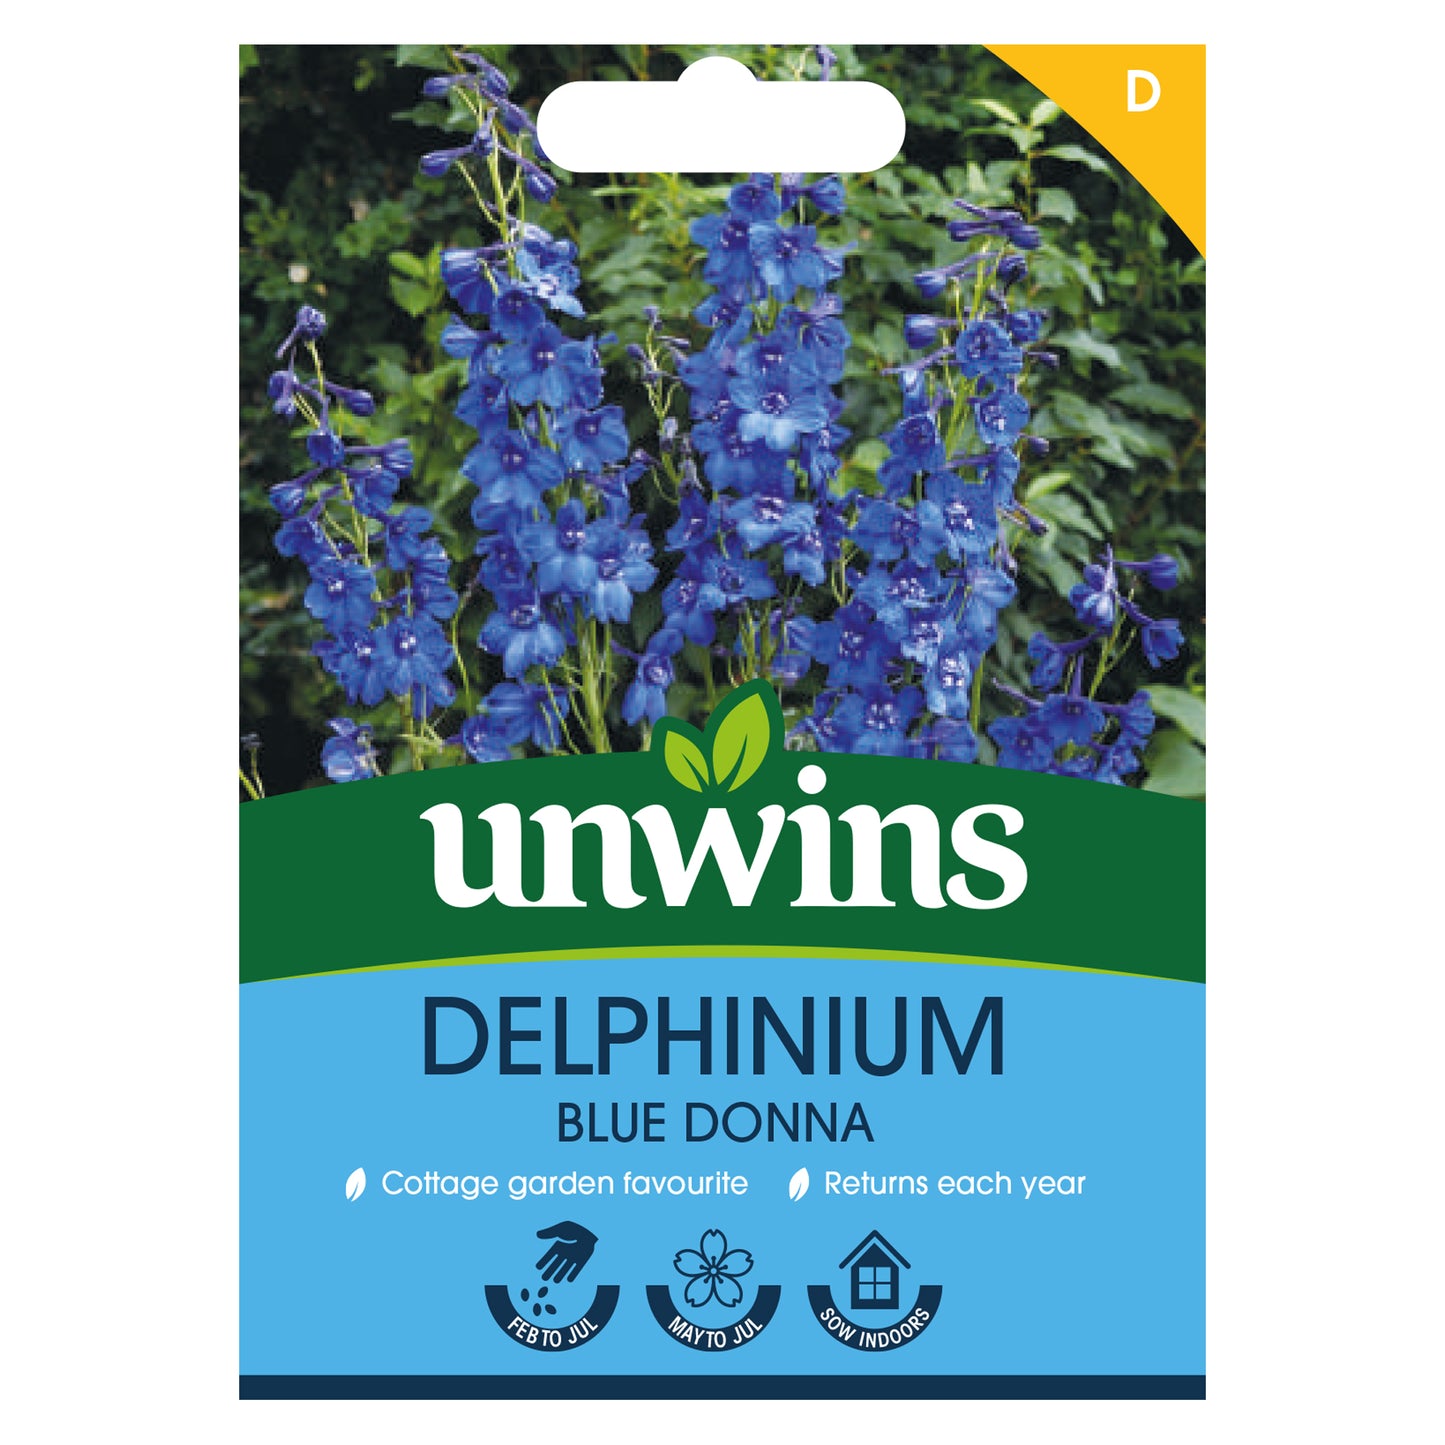 Unwins Delphinium Blue Donna Seeds Front